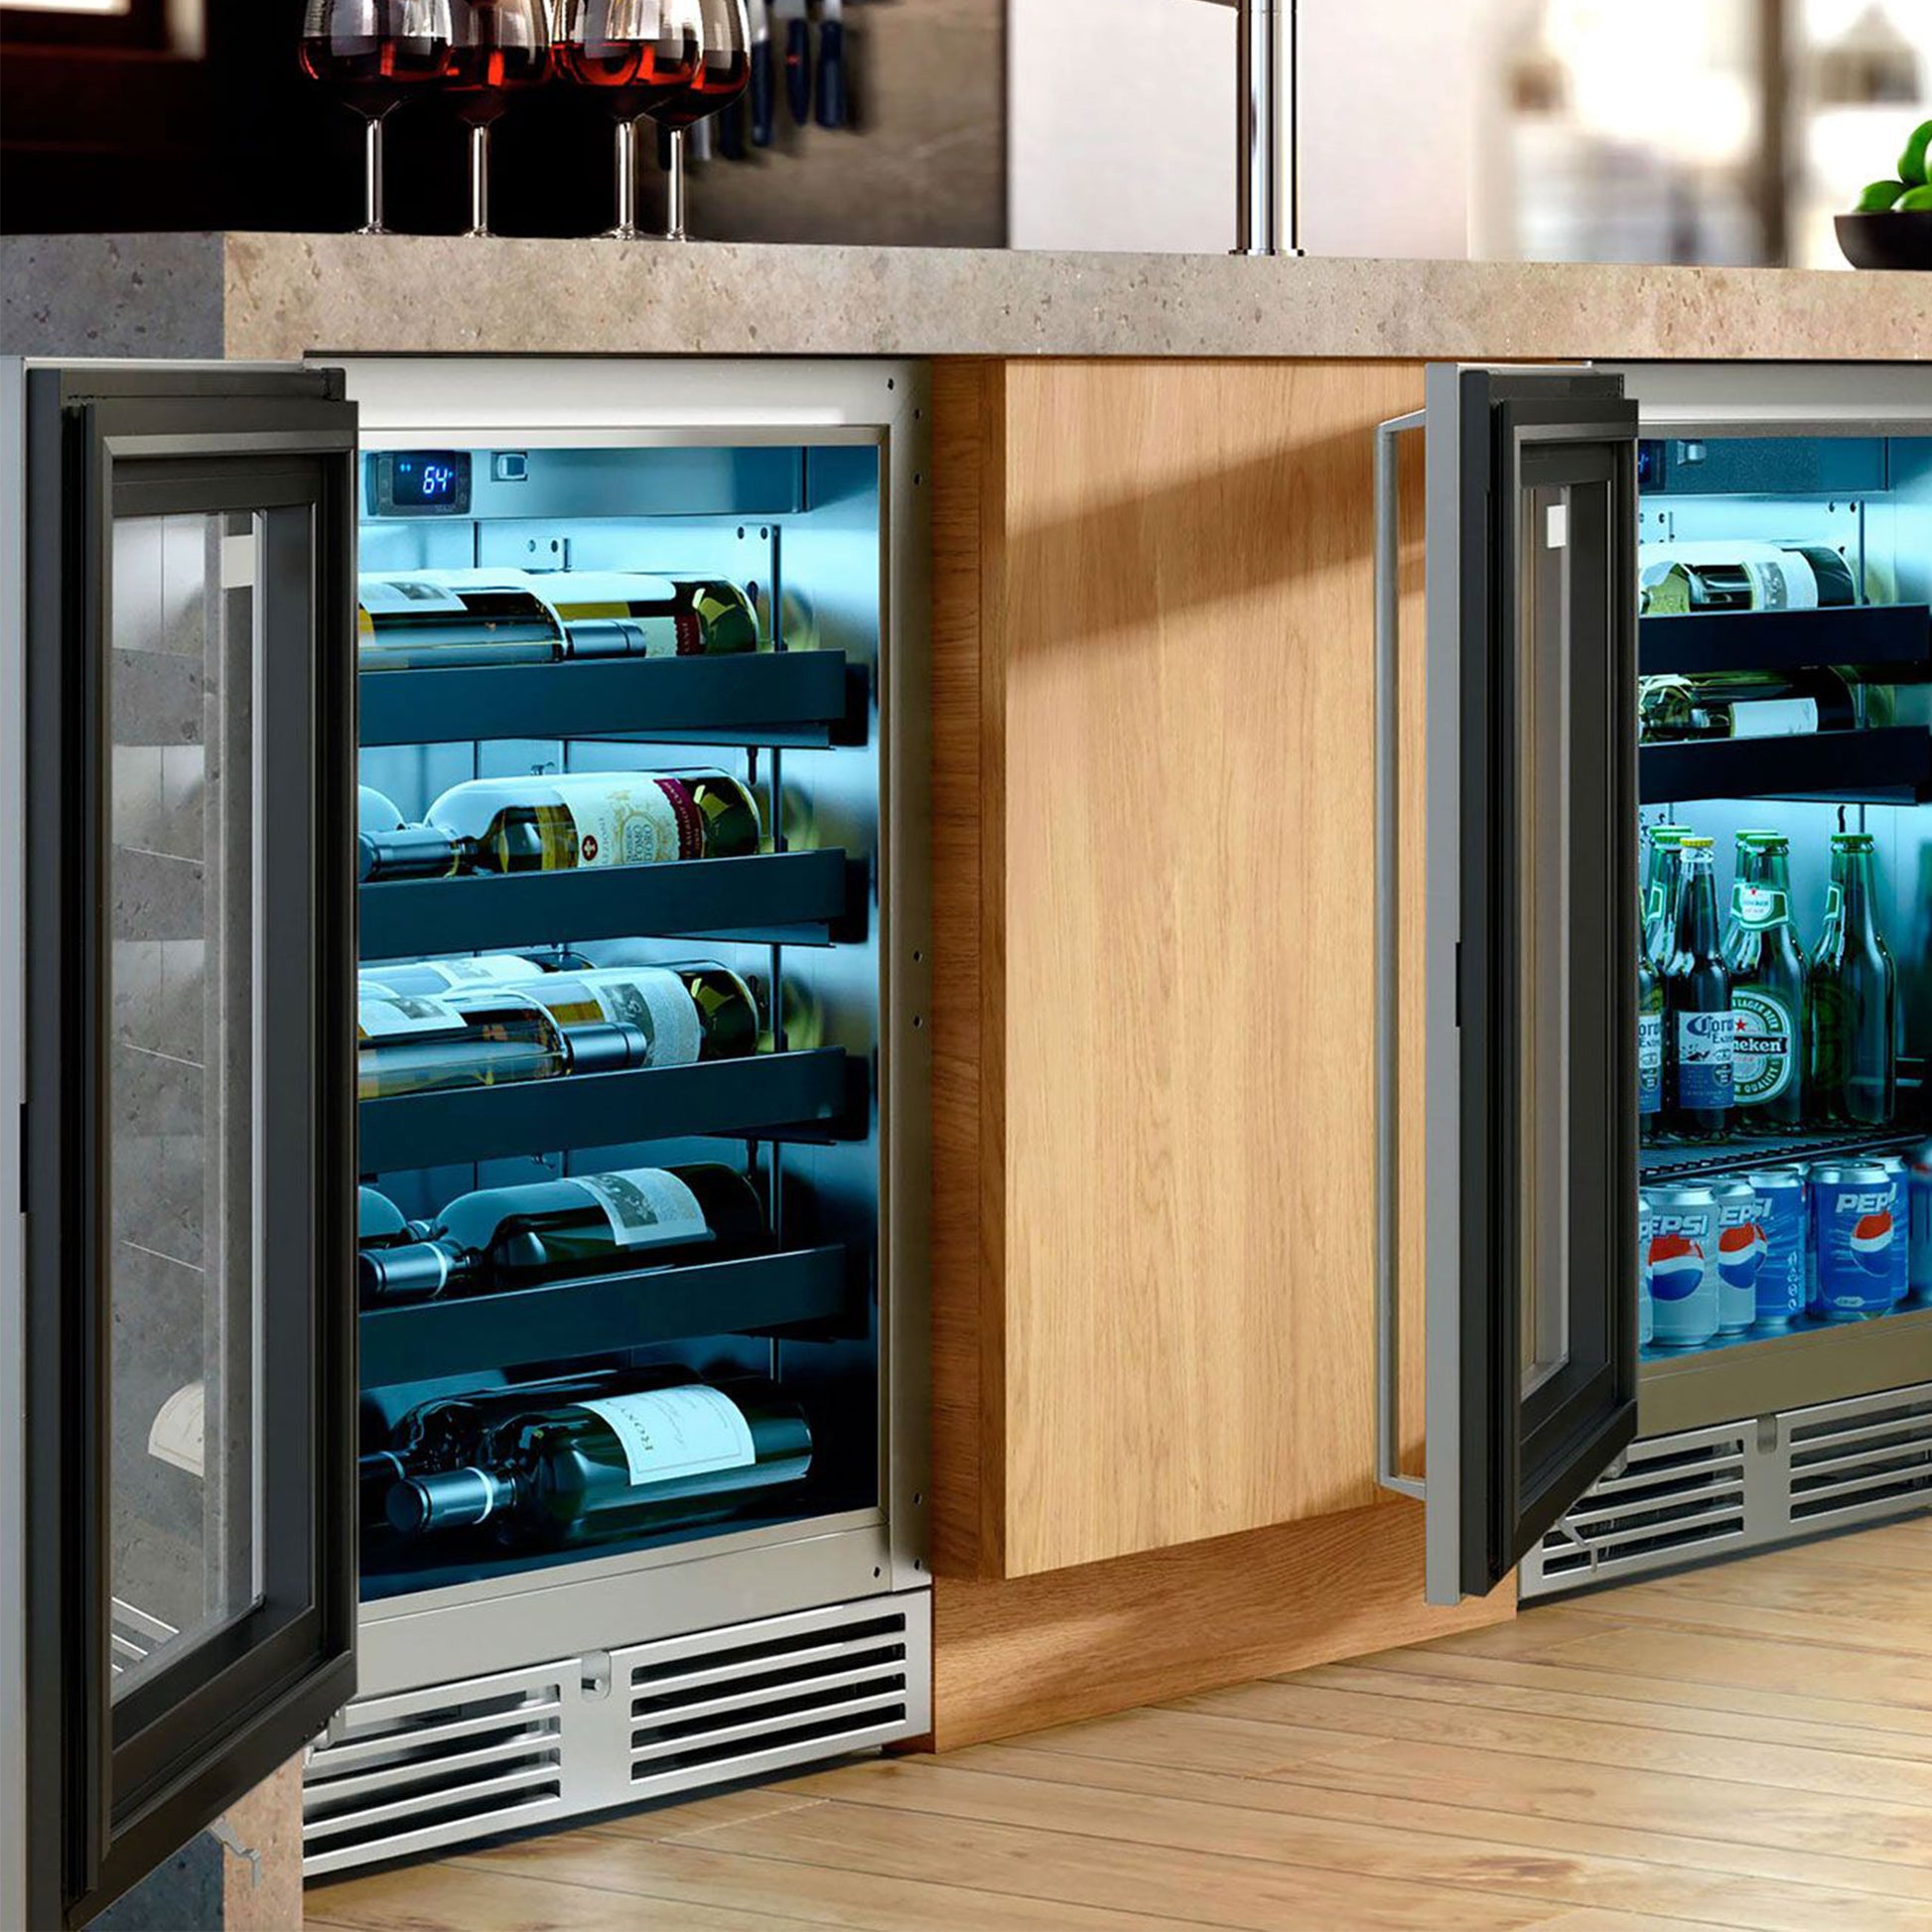 24 Inch Outdoor Undercounter Refrigerator With Solid Door